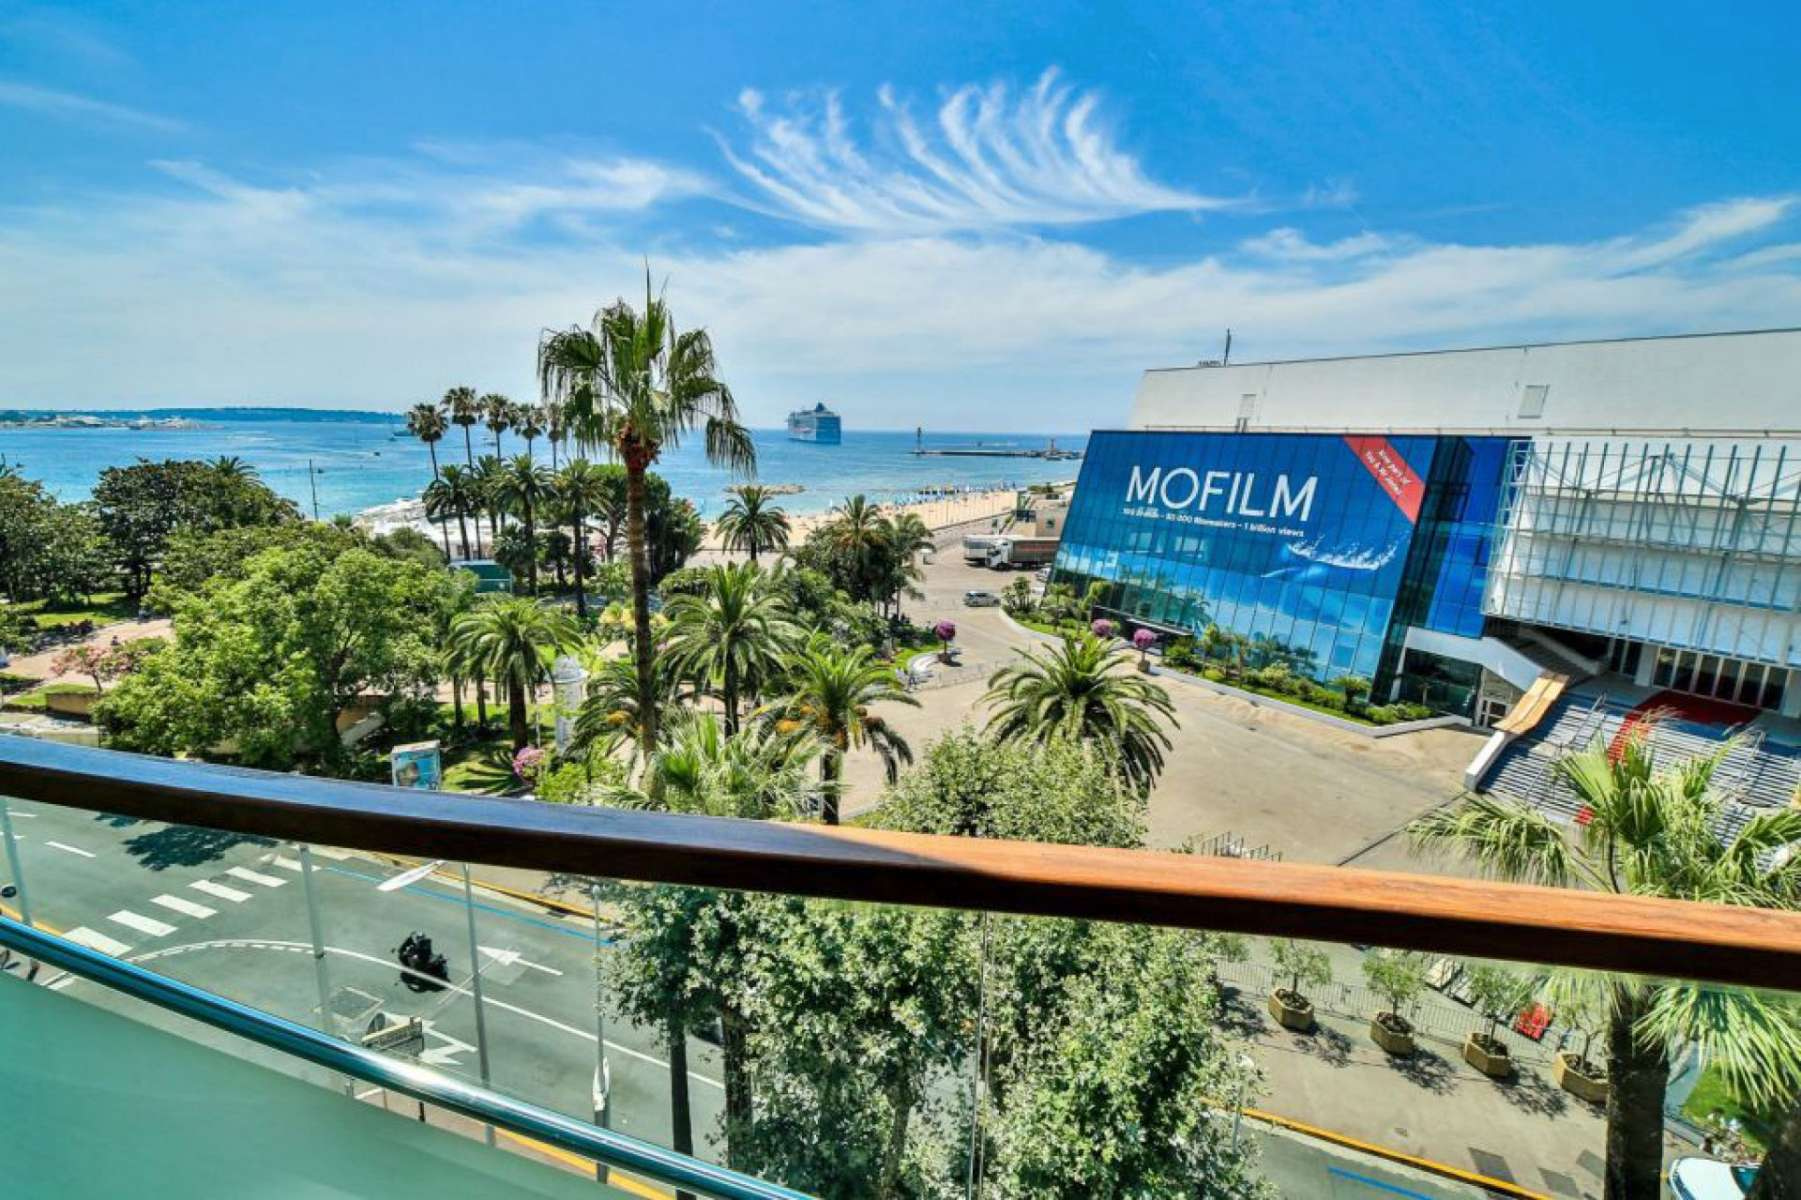 Apartment in Cannes facing Palais des Festivals